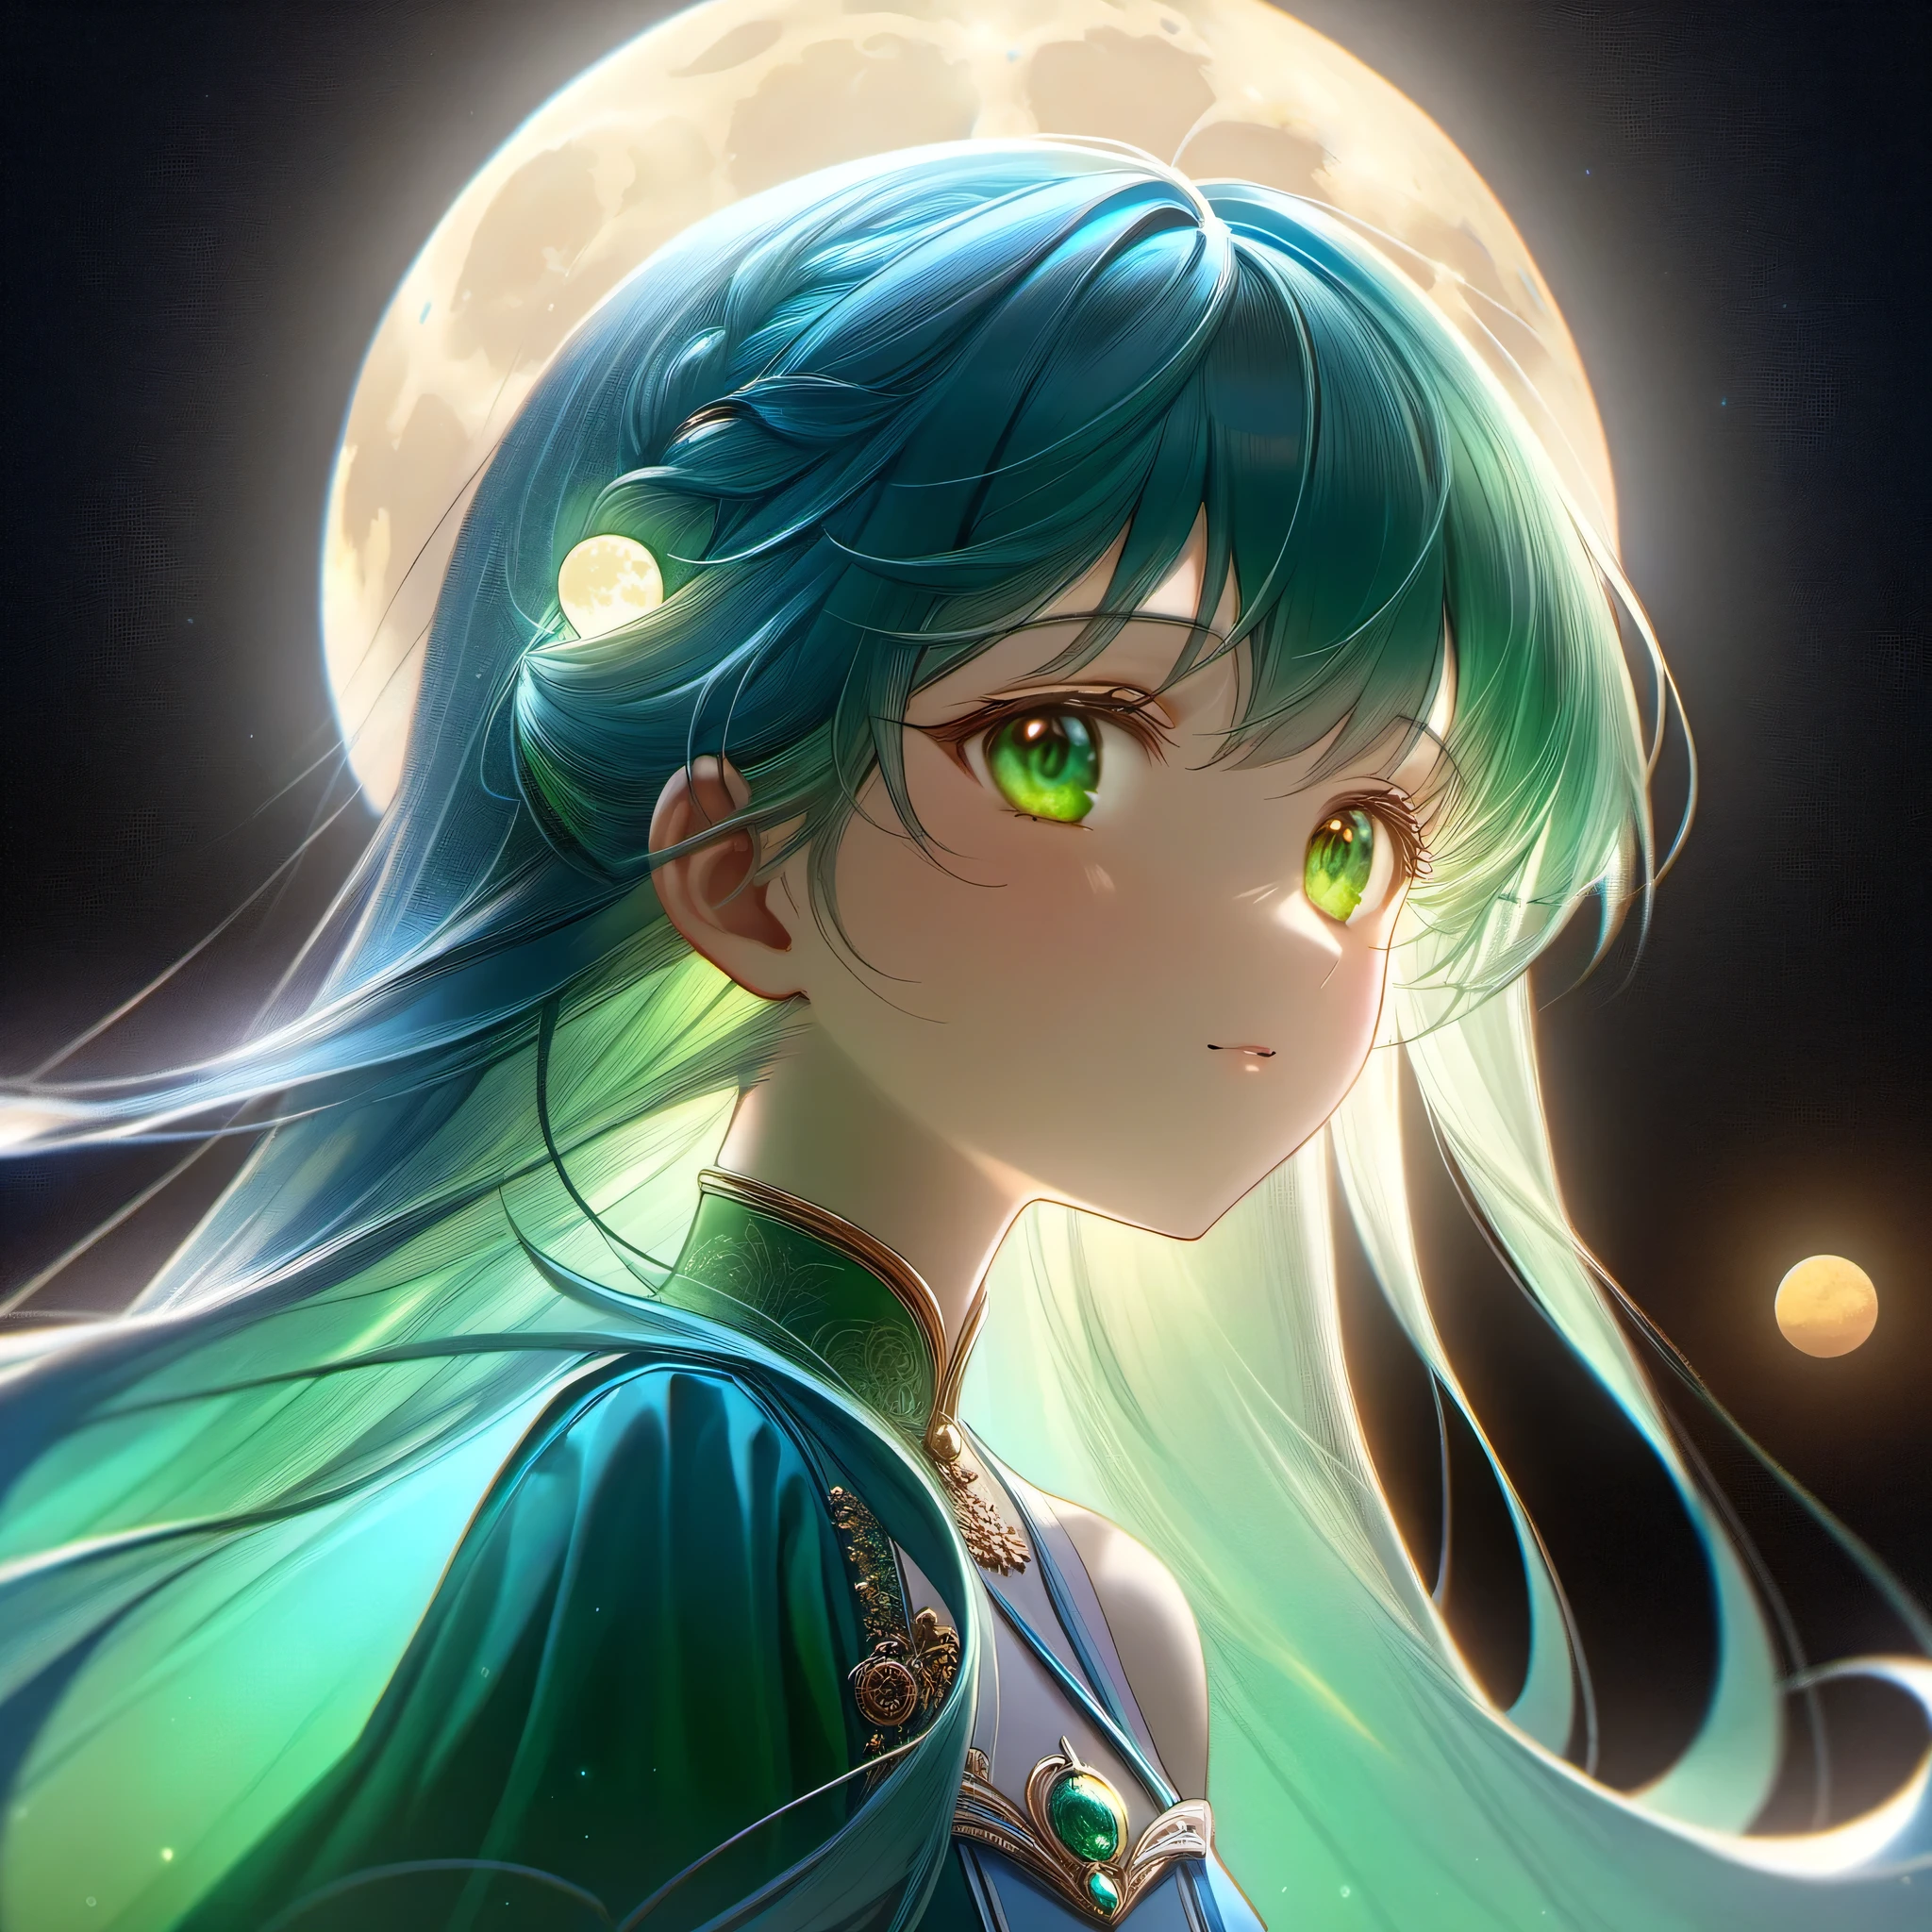 one princess มองขึ้นไปที่ดวงจันทร์ on water, ในเวลาเที่ยงคืน, รสชาติของนักชิมรุ่นเยาว์, พระจันทร์สีฟ้าอ่อน, หน้าตาน่ารัก, ผมกึ่งยาวสีฟ้า majolica สีเขียวมรกตหรือสีด้านใน, ดวงตาสีเขียวมรกต, มองขึ้นไปที่ดวงจันทร์, ไนอาด, ฉากลวงตา, เงียบสงบ, ประทับใจ, ((ภาพเหมือน)) ((ผลงานชิ้นเอก, คุณภาพดีที่สุด, อัลตร้า-รายละเอียดed, ละเอียดอ่อนและสวยงามอย่างยิ่ง)), ((ความสมจริงด้วยแสง, เหนือจริง)), ((extremely รายละเอียดed CG unity 8k wallpaper)), ((ได้รับรางวัล, ถูกต้อง, ยูเอชดี, ผิวที่มีพื้นผิว, ความคลาดเคลื่อนของสี, สมบูรณ์แบบ anatomy, อัตราส่วนทองคำ)), (exquisite attention to รายละเอียด), ((สมบูรณ์แบบ_องค์ประกอบ, สมบูรณ์แบบ_ออกแบบ, สมบูรณ์แบบ_เค้าโครง, สมบูรณ์แบบ_รายละเอียด, อัลตร้า_รายละเอียดed)), ((ความสามัคคีที่สวยงาม)), ((สไตล์สุนทรียศาสตร์))